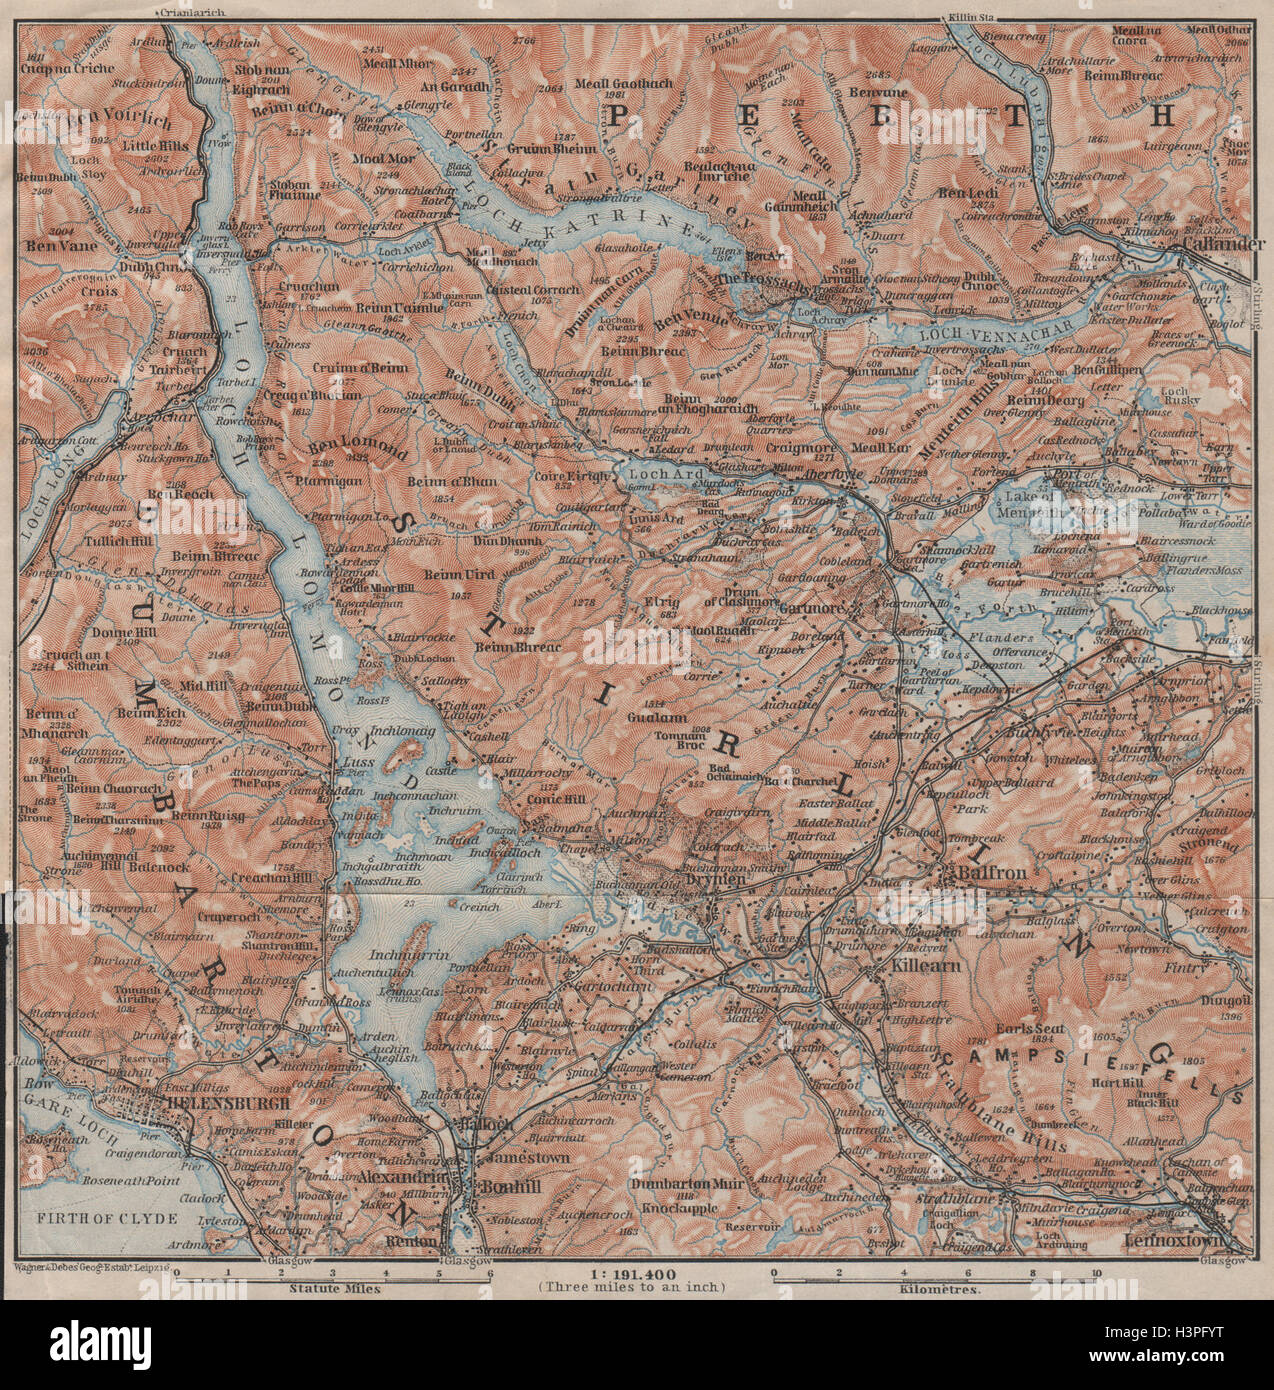 LOCH LOMOND & TROSSACHS. Helensburgh Balloch Drymen. Schottland 1906 alte  Karte Stockfotografie - Alamy